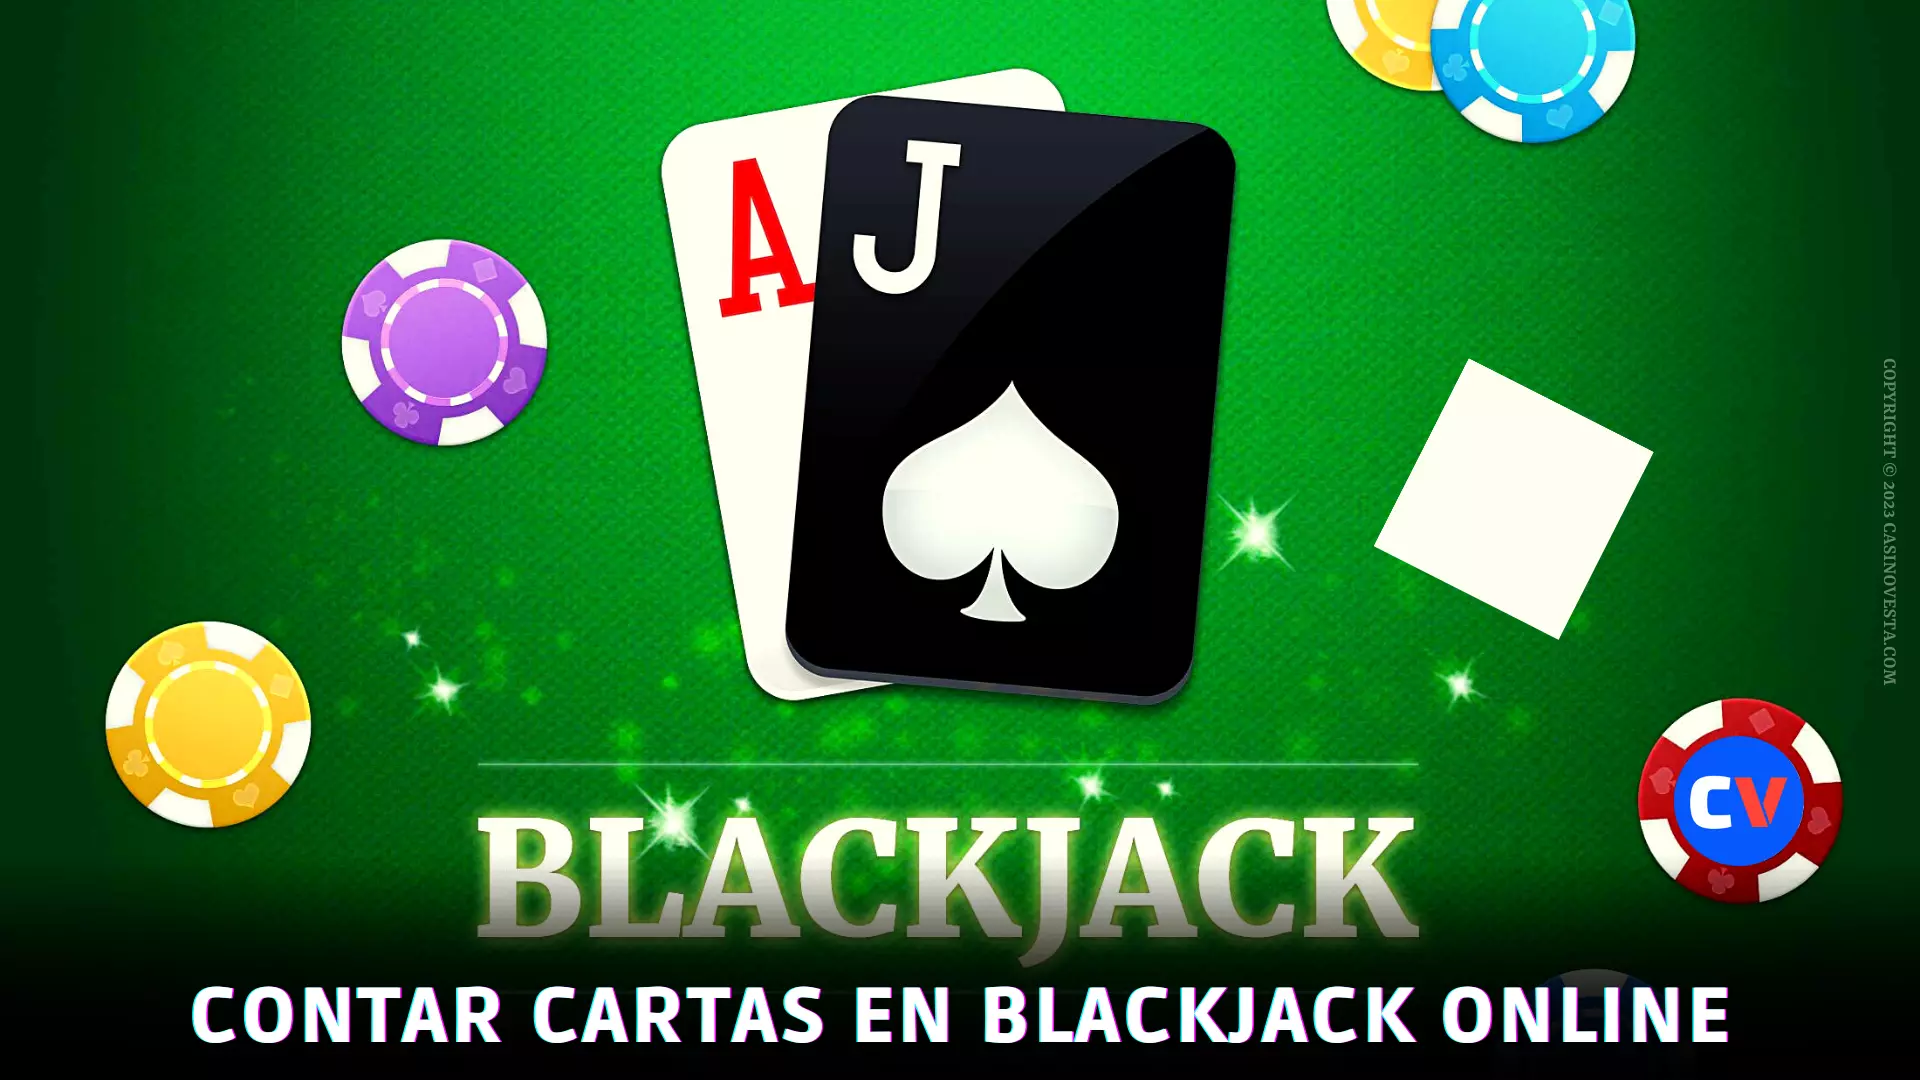 El conteo de cartas es posible en el blackjack online